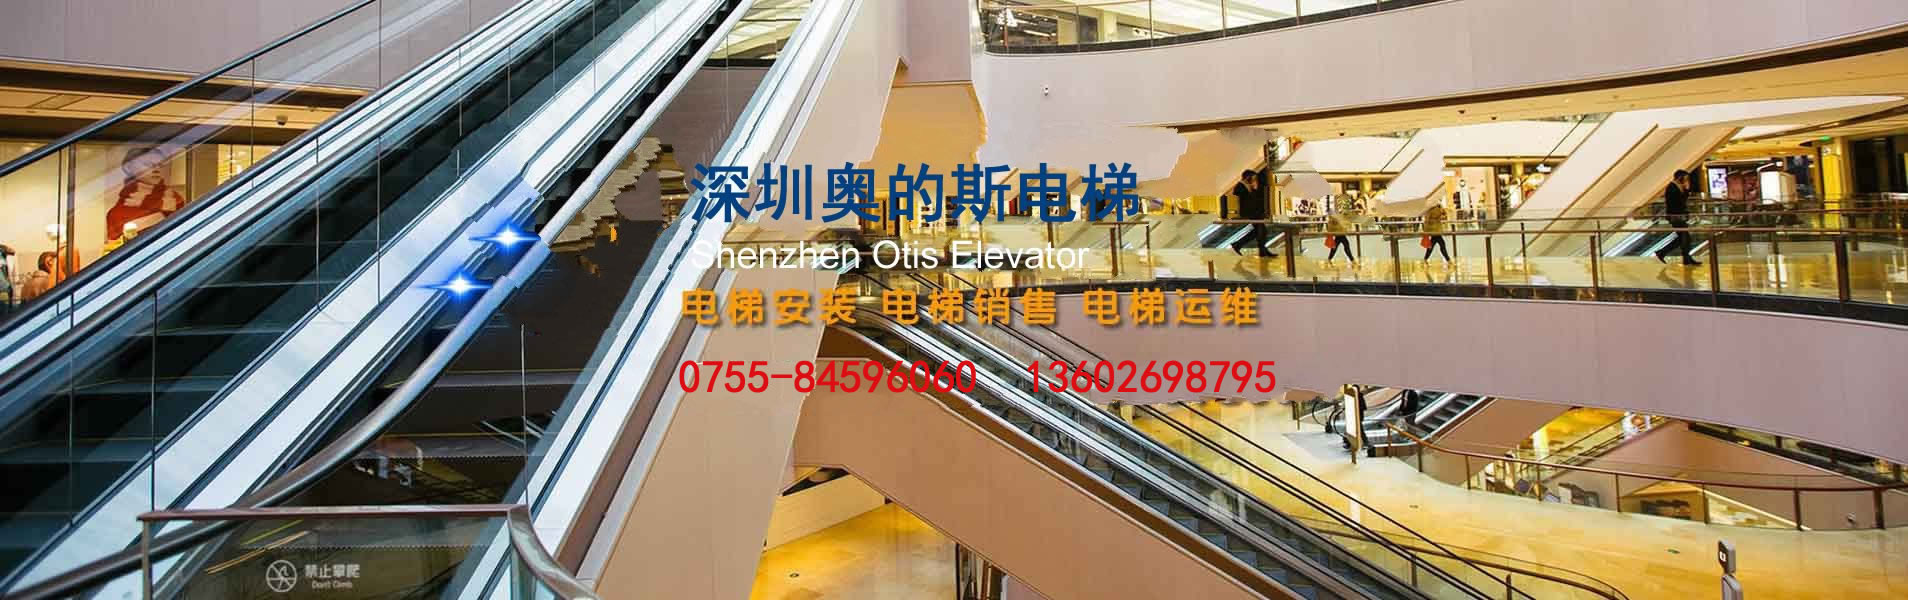 深圳市奥的斯电梯工程公司